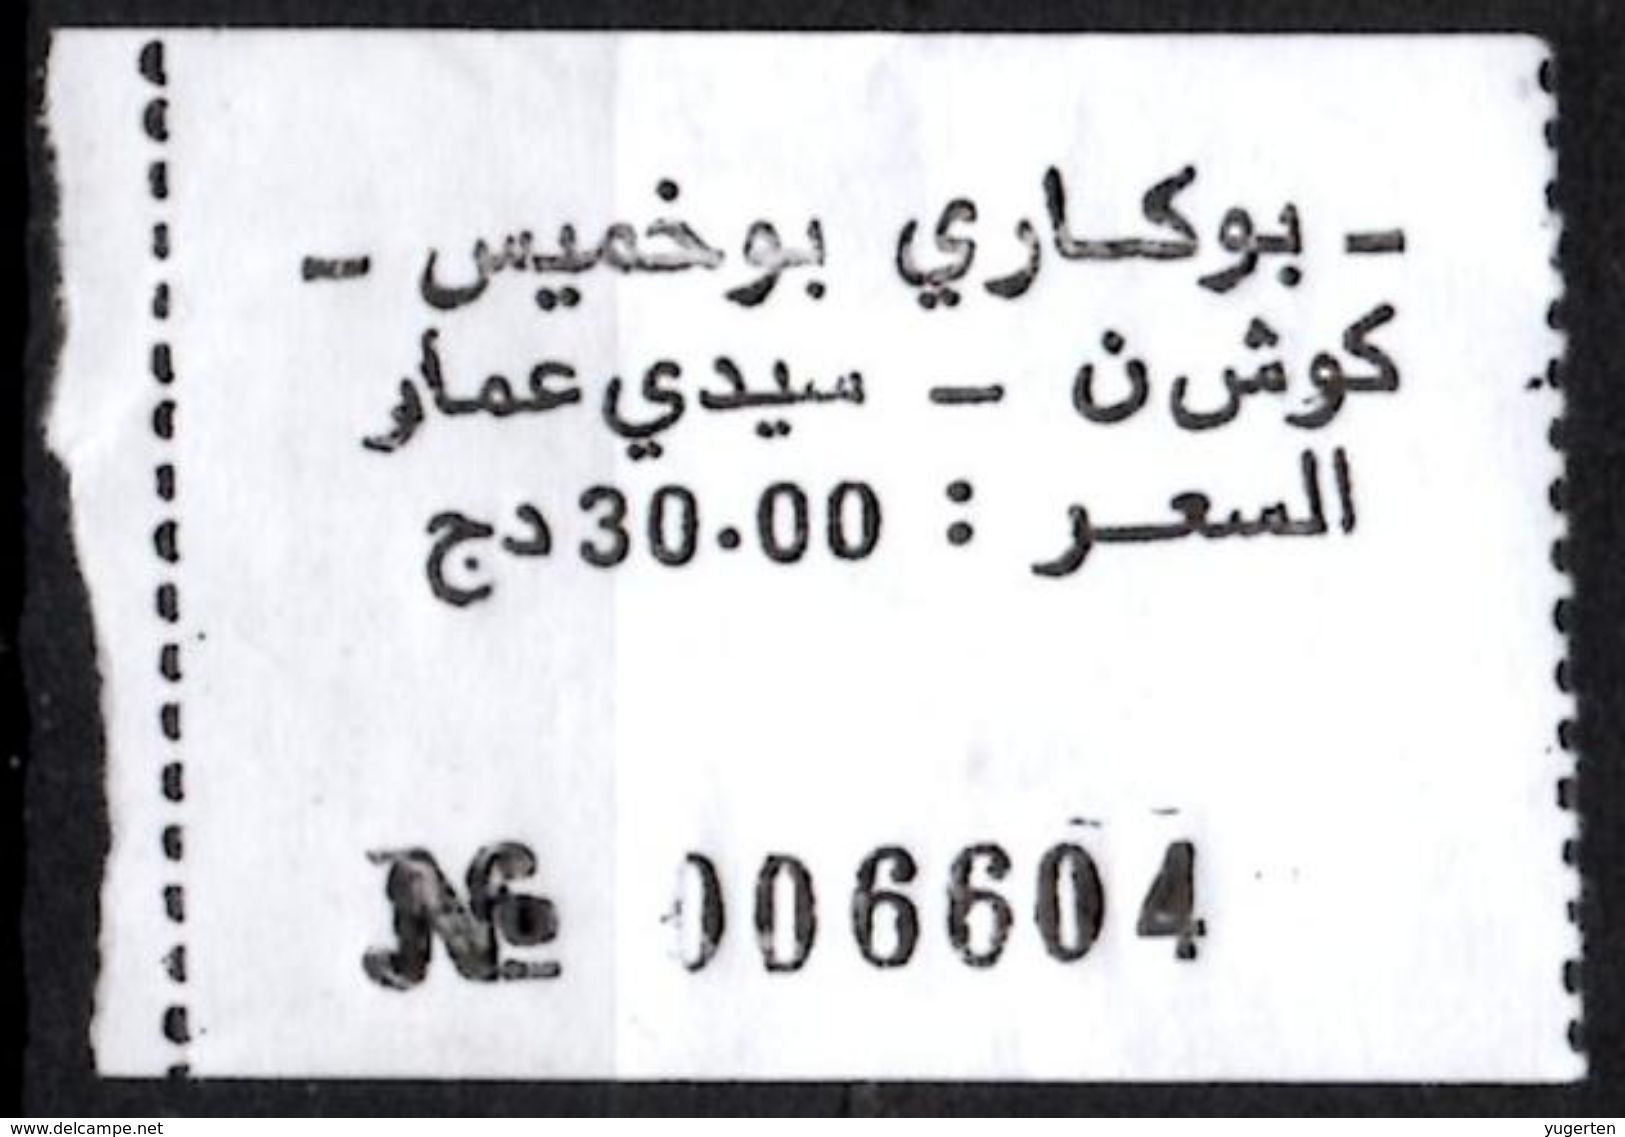 Algeria Ticket Bus Transport Urbain - Annaba Trajet Kouche / Sidi Ammar Billete De Autobús Biglietto Dell'autobus - Mondo